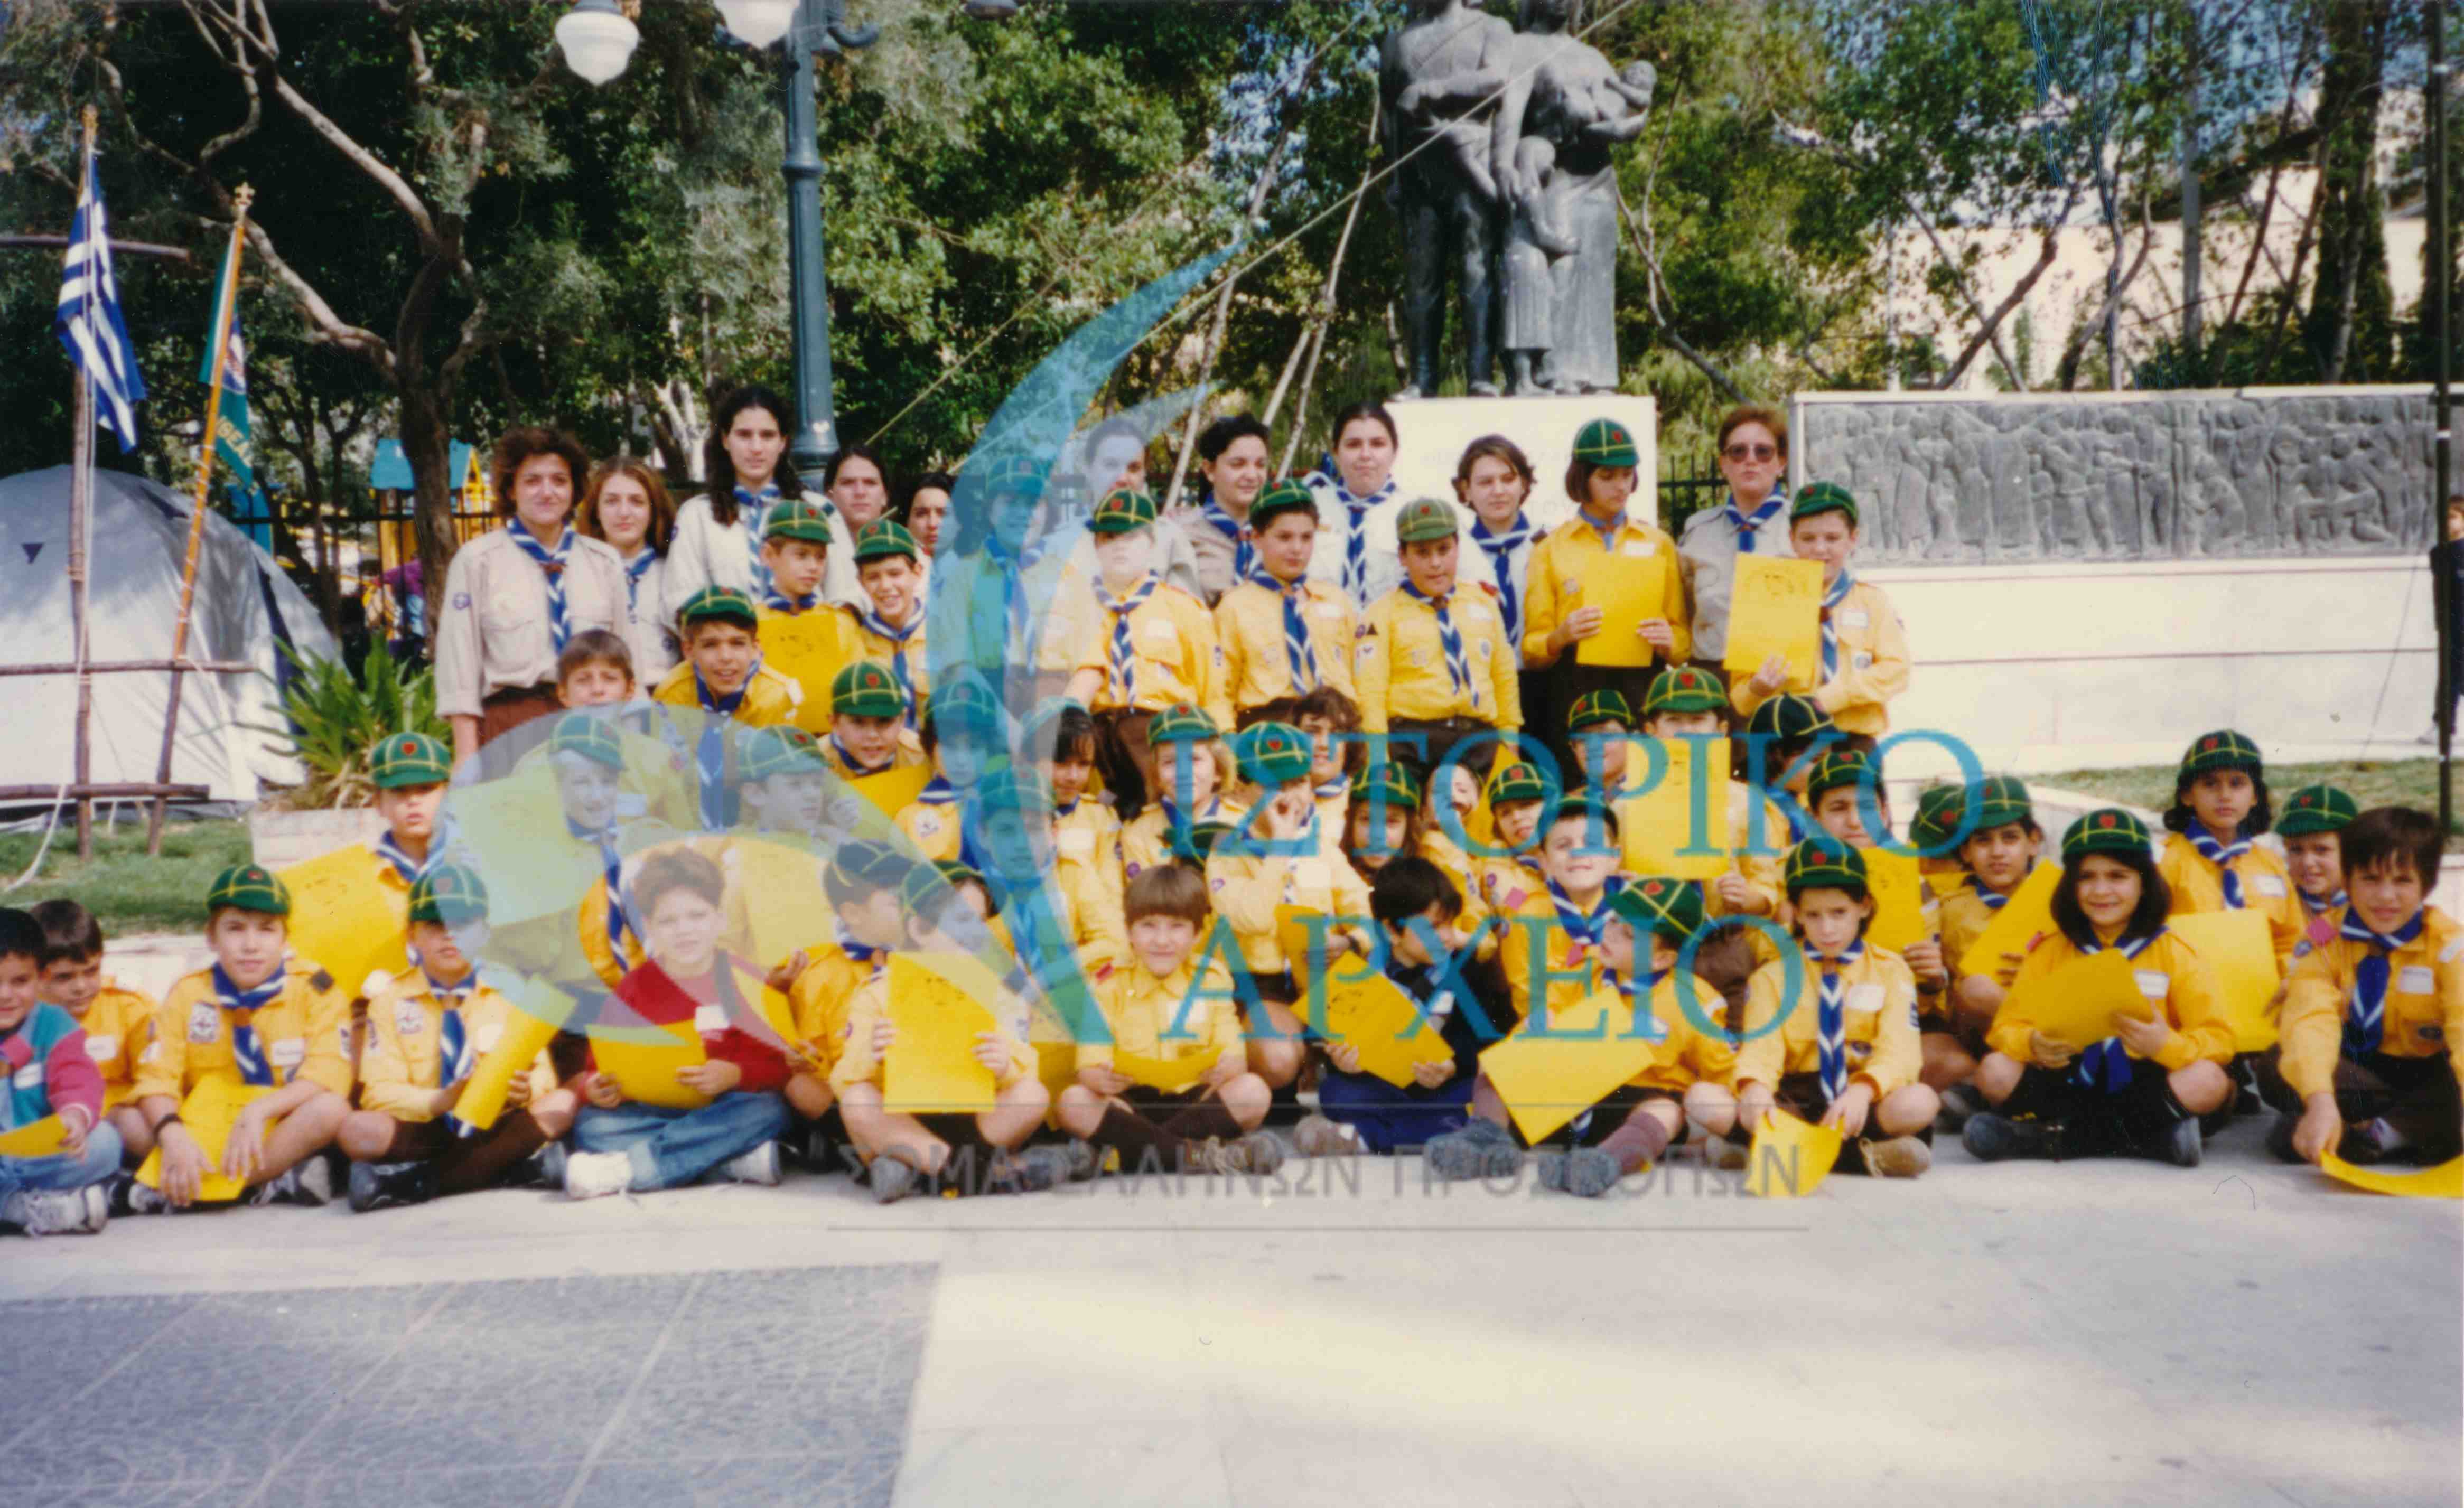 Λυκόπουλα του Μοσχάτου και της Καλλιθέας σε δράση στην Πλατεία Δαβάκη για τα 65 Χρόνια Λυκοπουλισμού στην Ελλάδα το 1996.